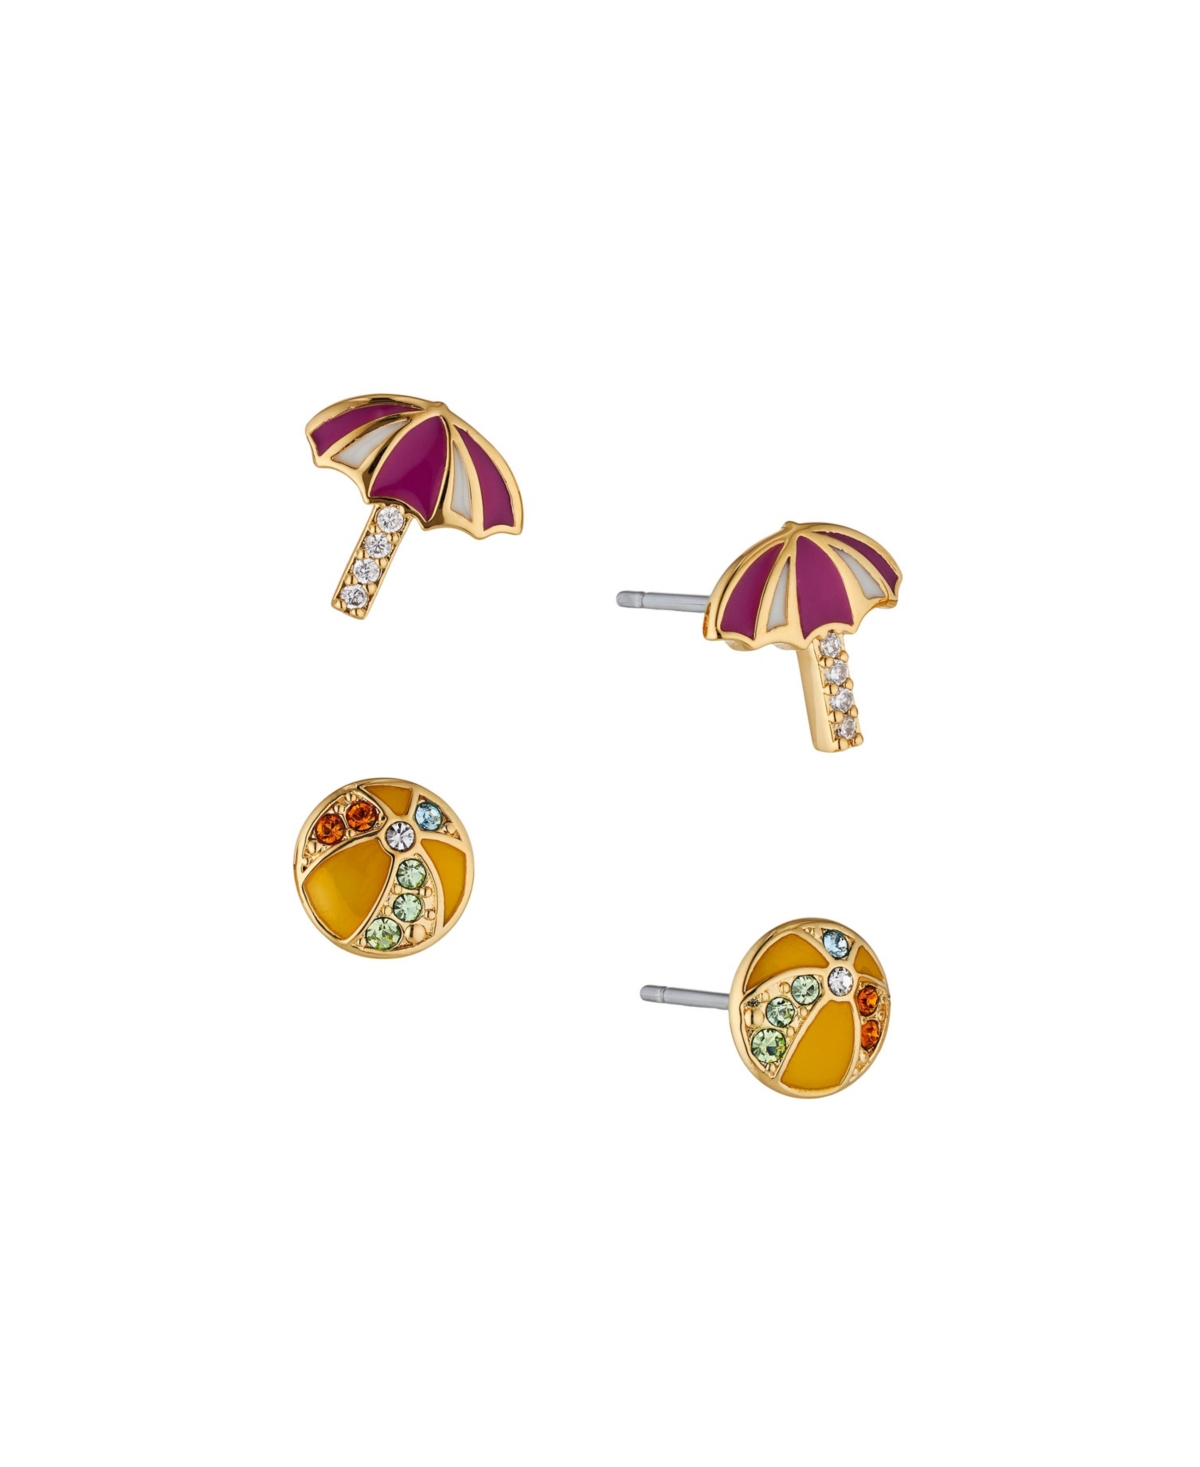 Women's Beach Earring Set, 2 Piece - Gold-Plated